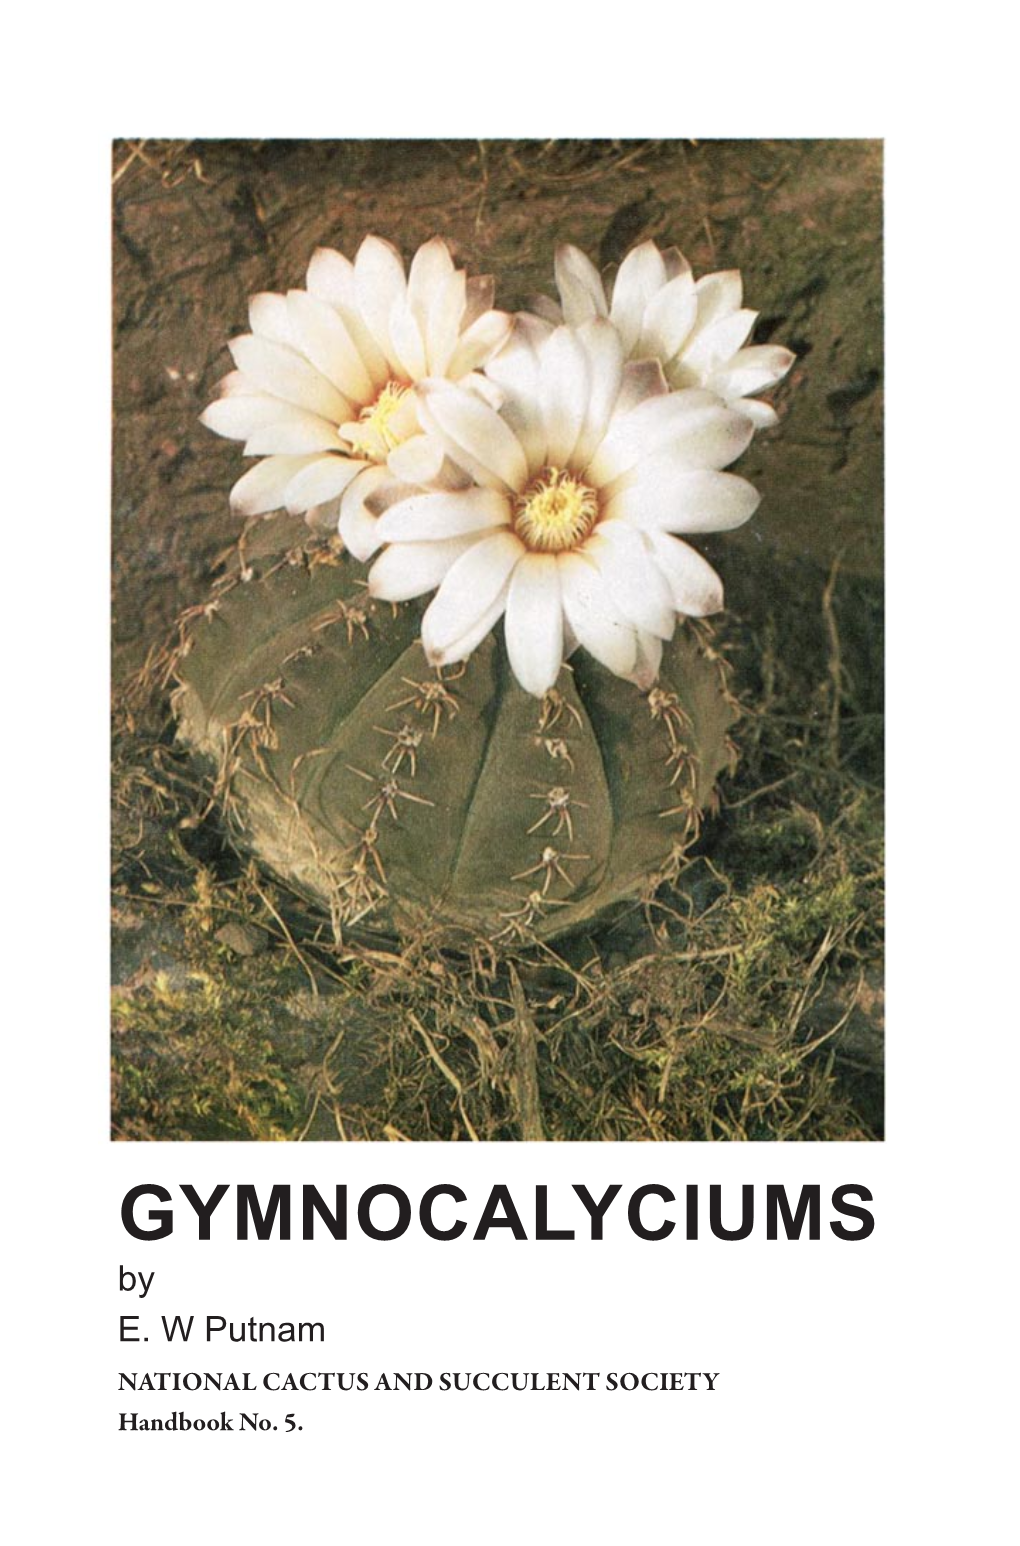 GYMNOCALYCIUMS by E